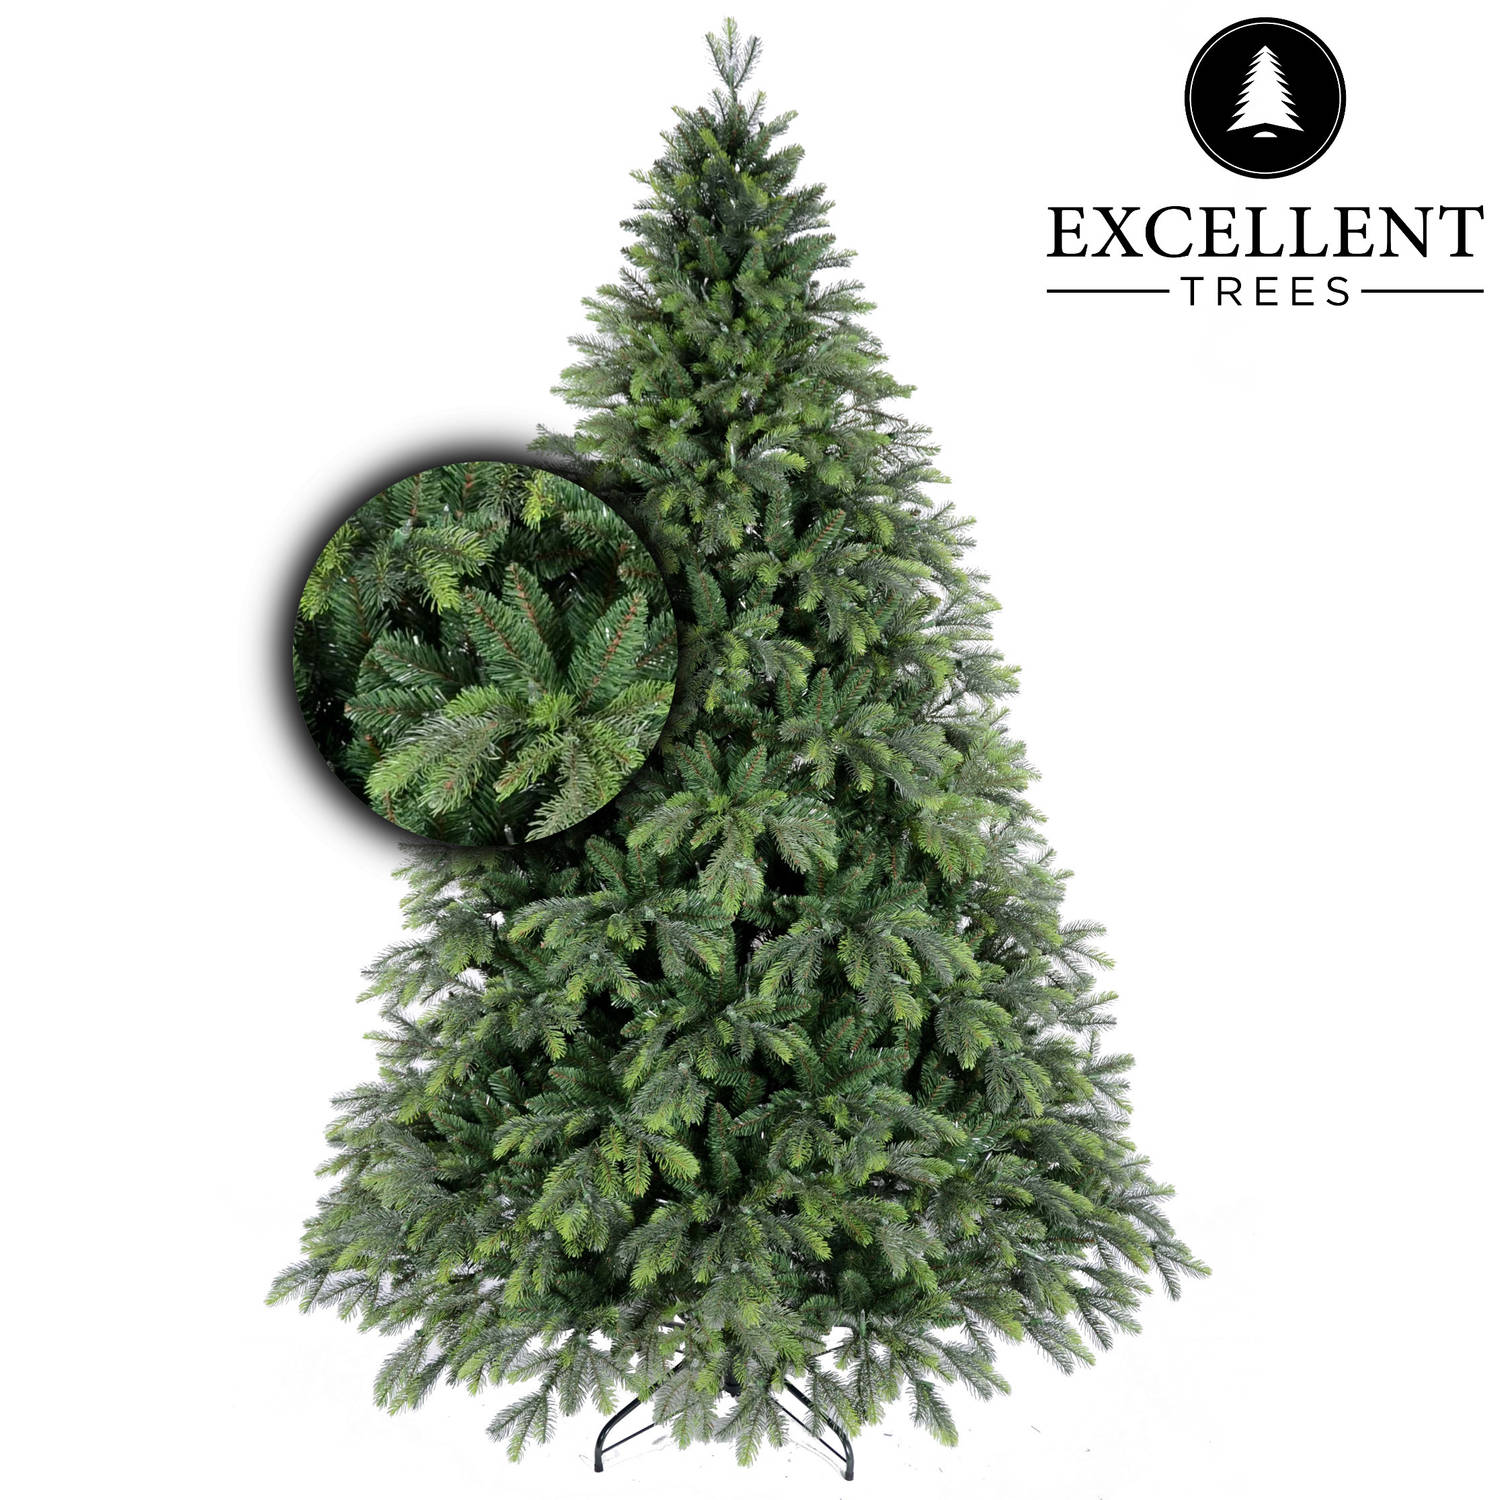 Kerstboom Excellent Trees® Kalmar 180 cm - Luxe uitvoering.